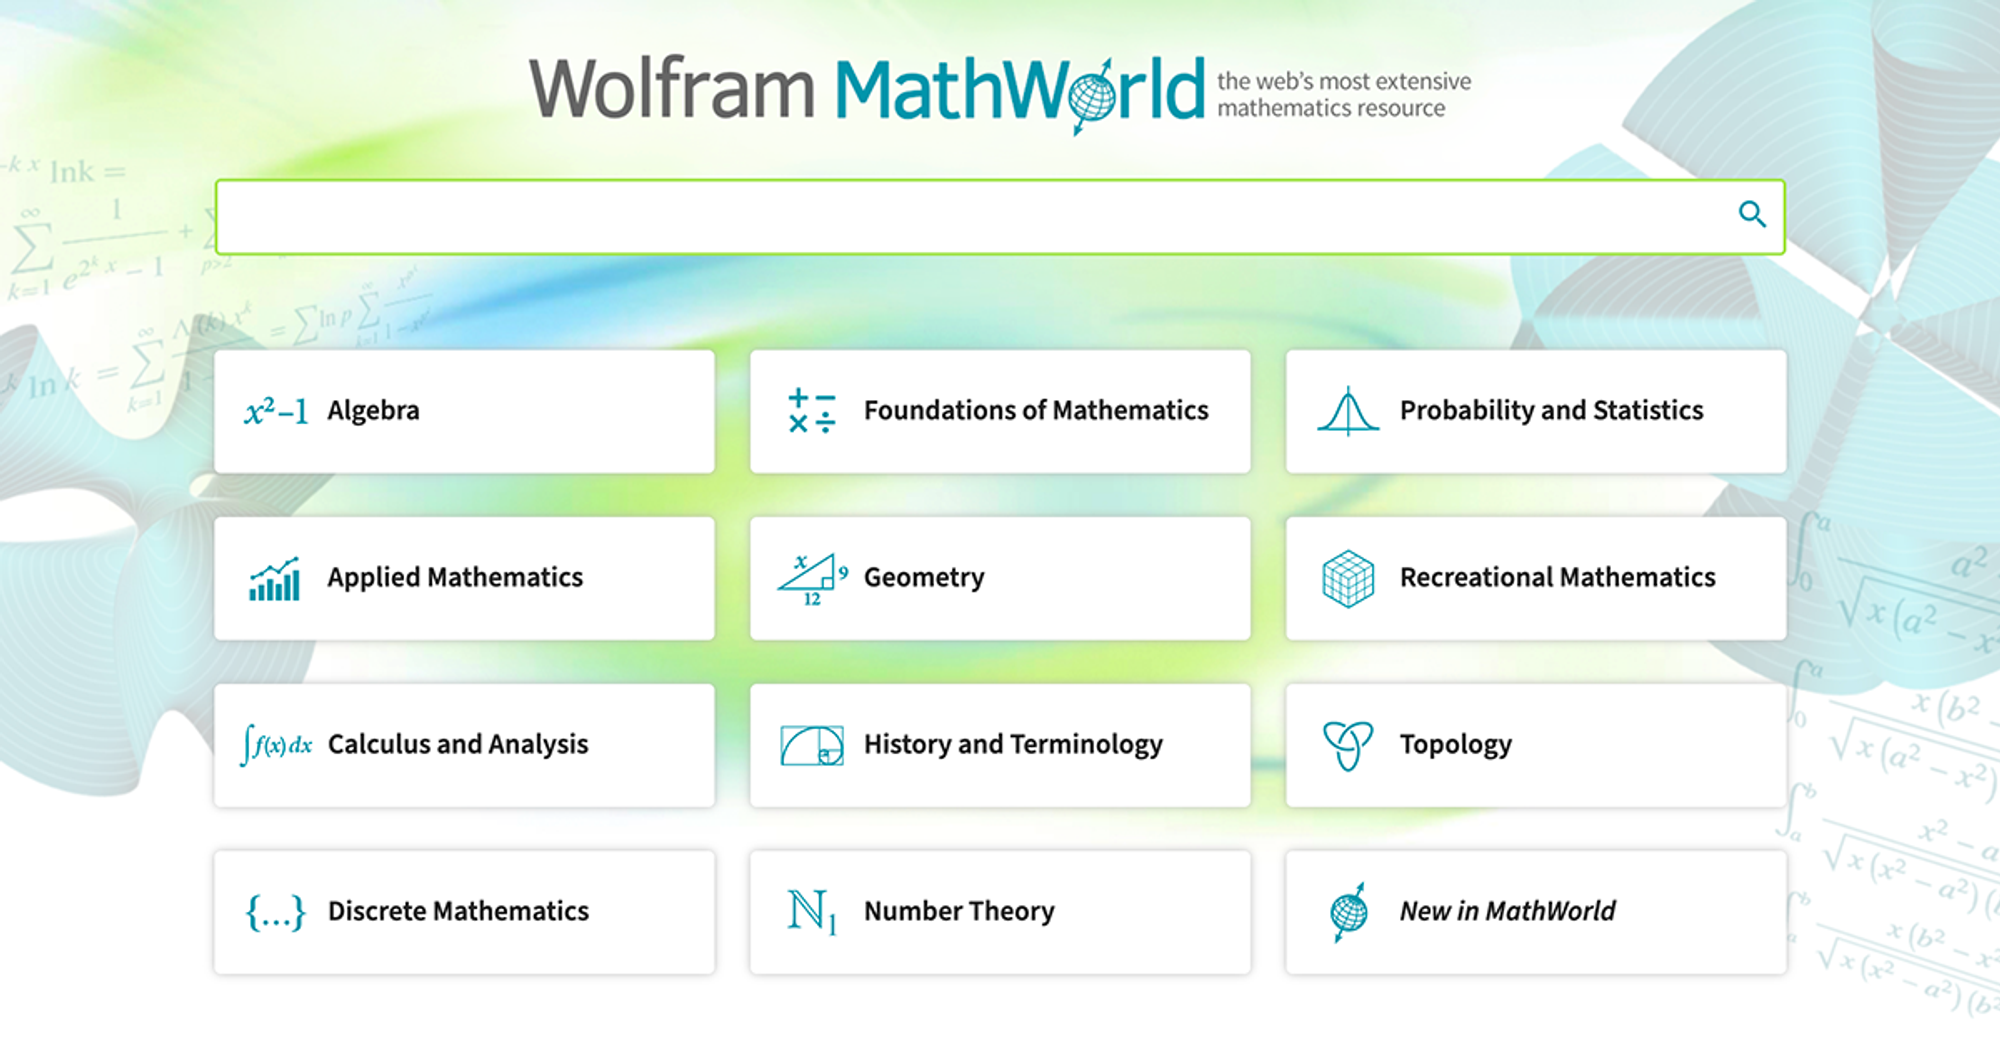 Wolfram MathWorld: The Web's Most Extensive Mathematics Resource